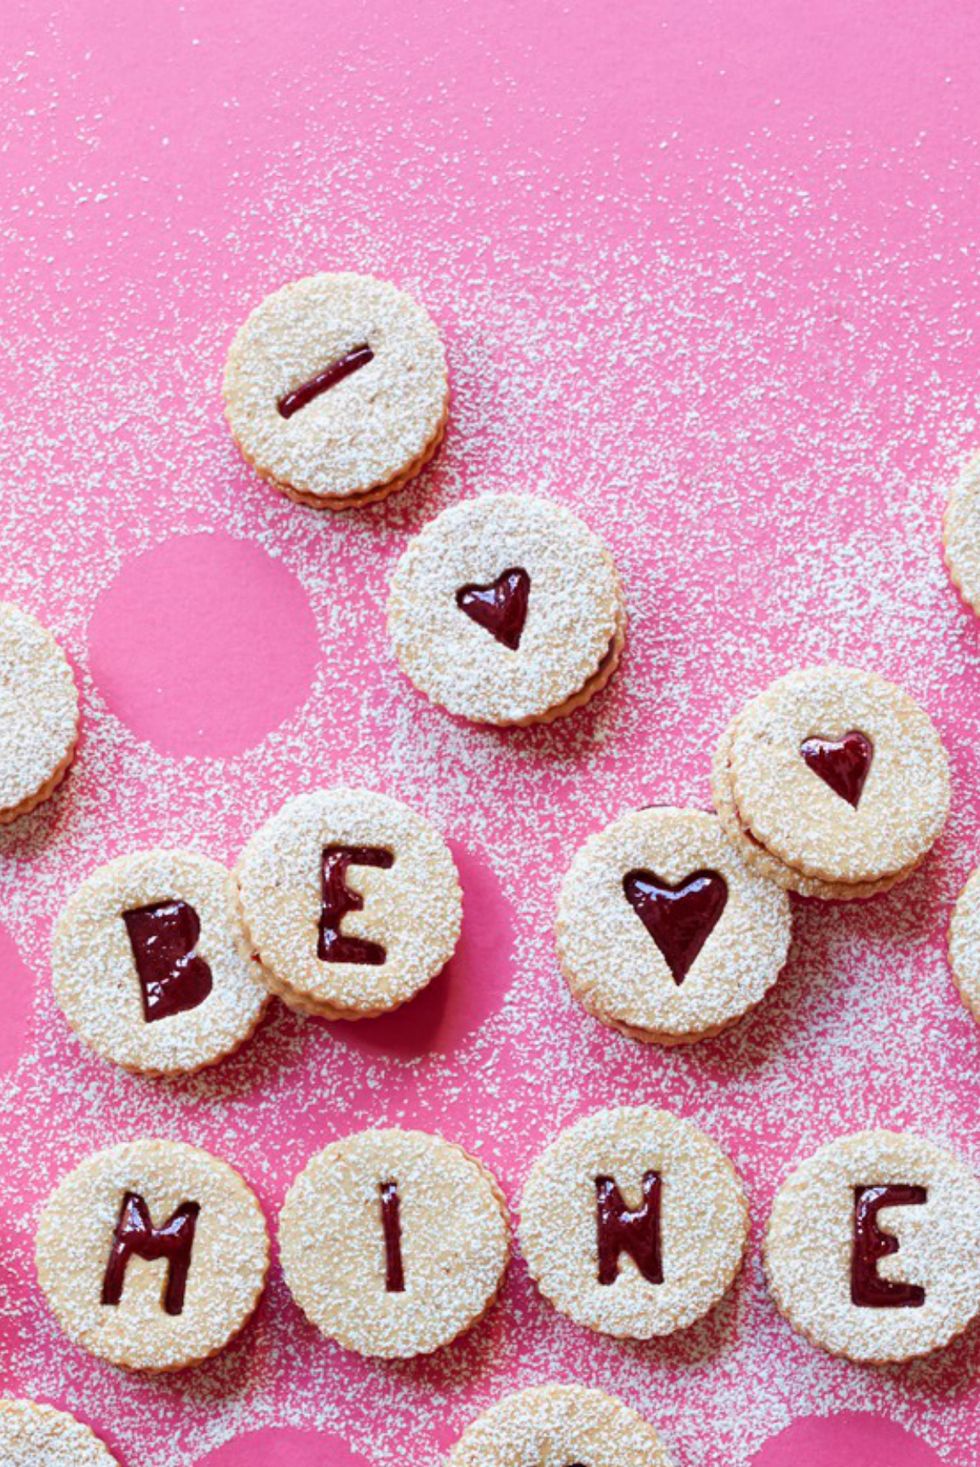 valentine's day desserts sweet cherry linzer torte cookies